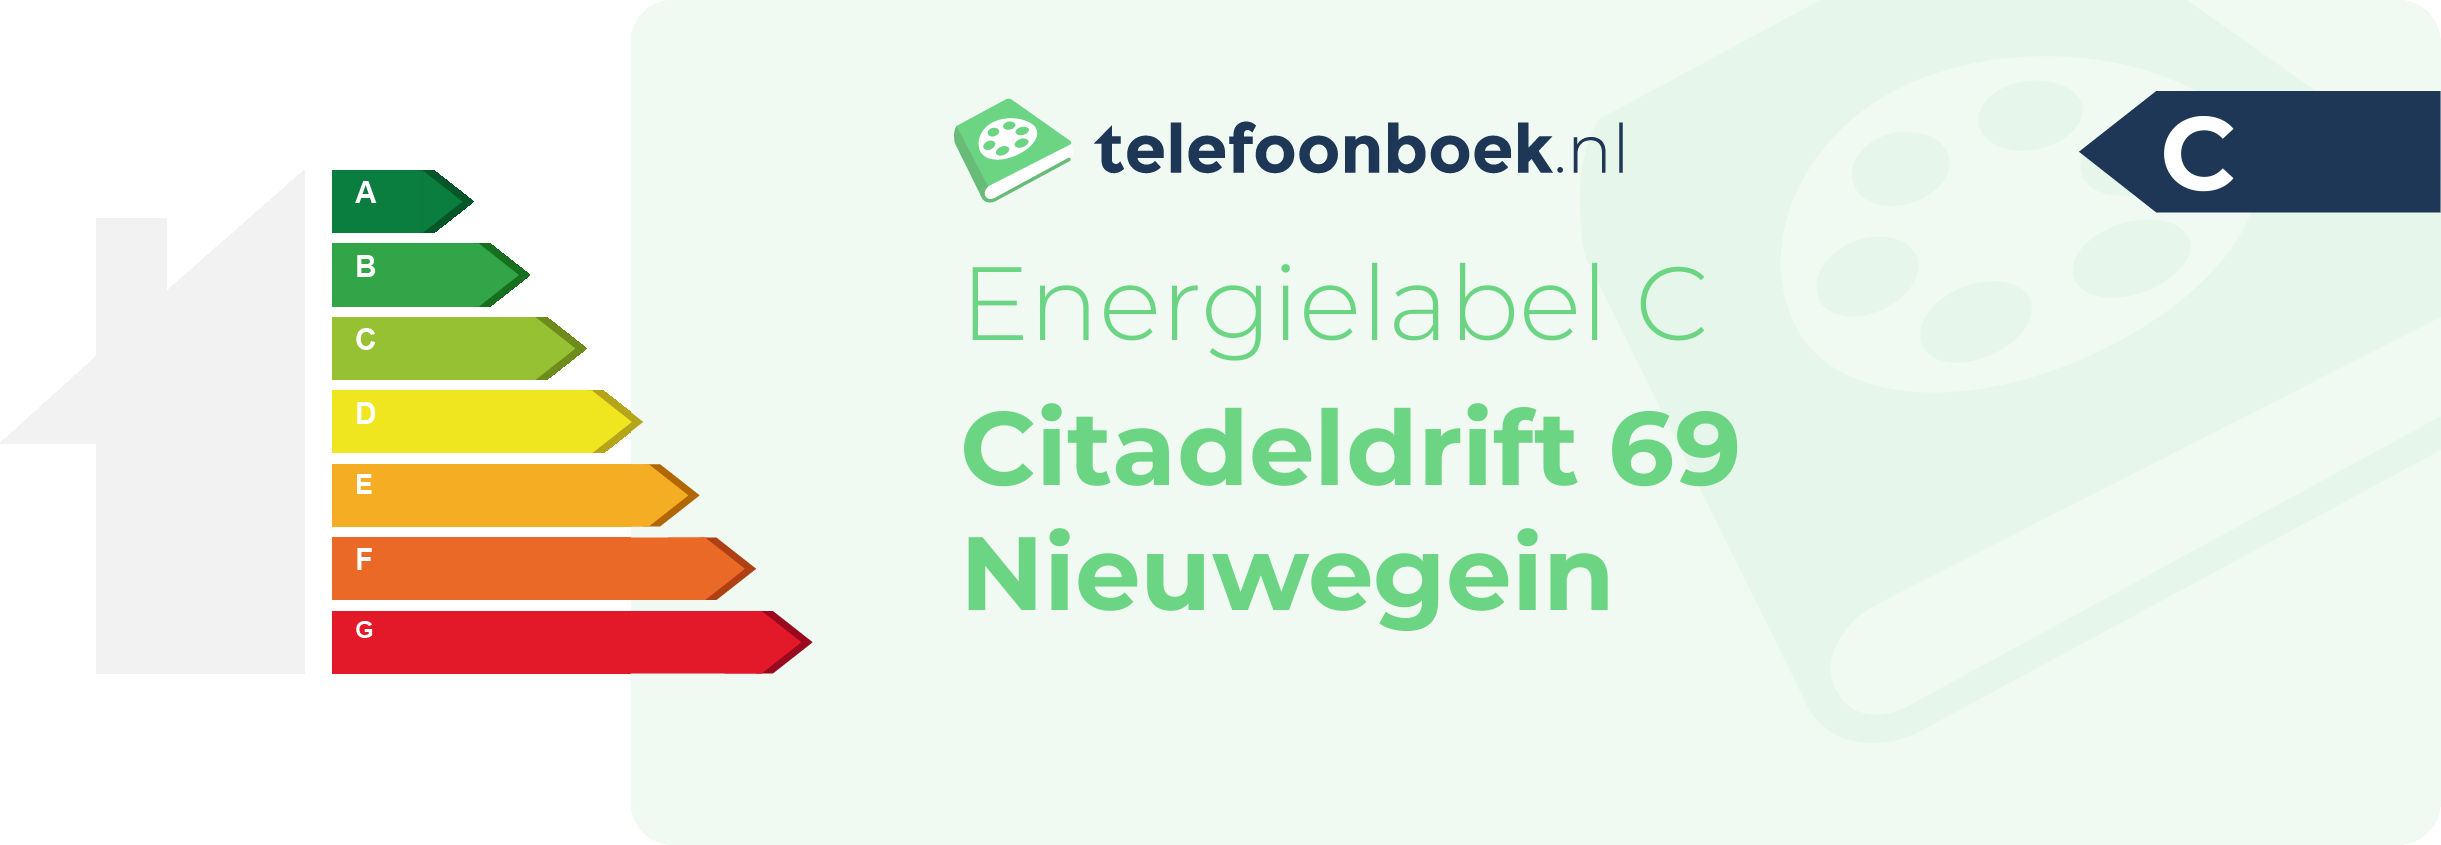 Energielabel Citadeldrift 69 Nieuwegein